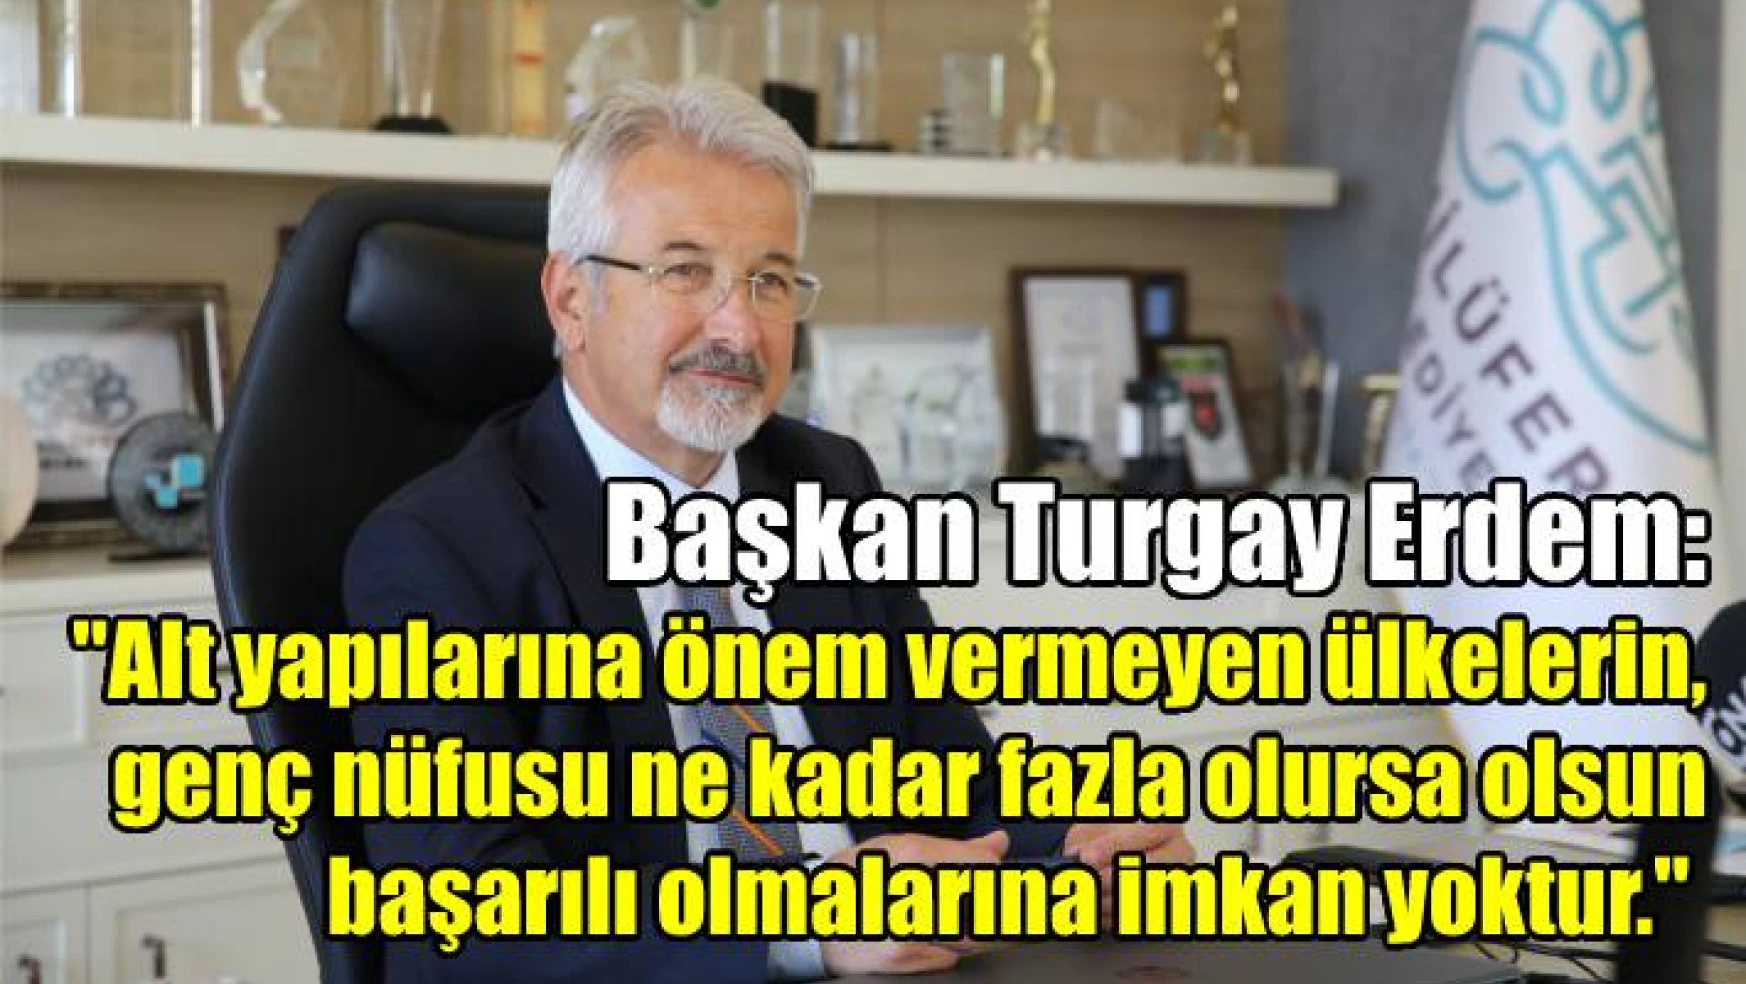 Nilüfer Belediyesi Başkanı Turgay Erdem ile özel röportaj